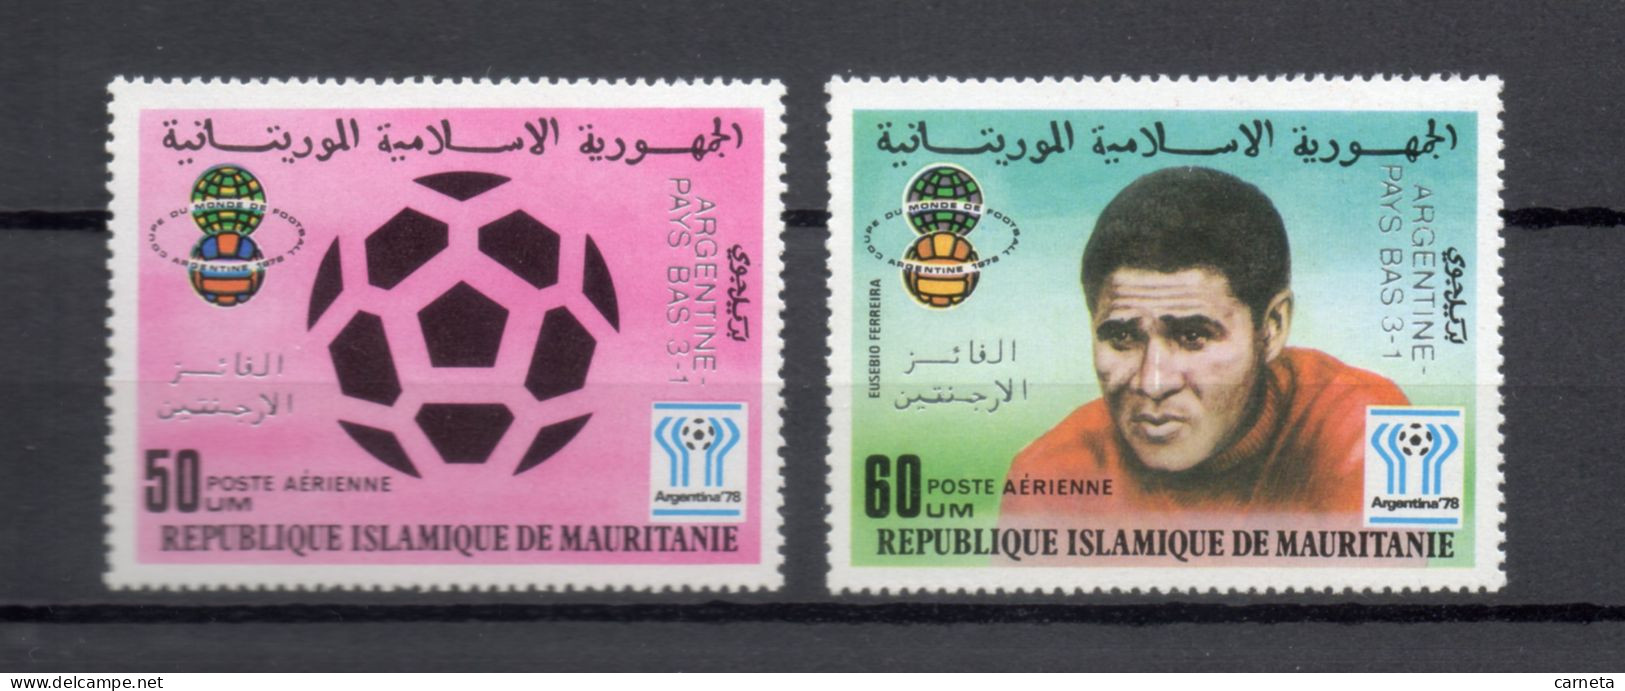 MAURITANIE  PA  N° 188 + 189   NEUFS SANS CHARNIERE   COTE 7.00€    FOOTBALL SPORT SURCHARGE - Mauretanien (1960-...)